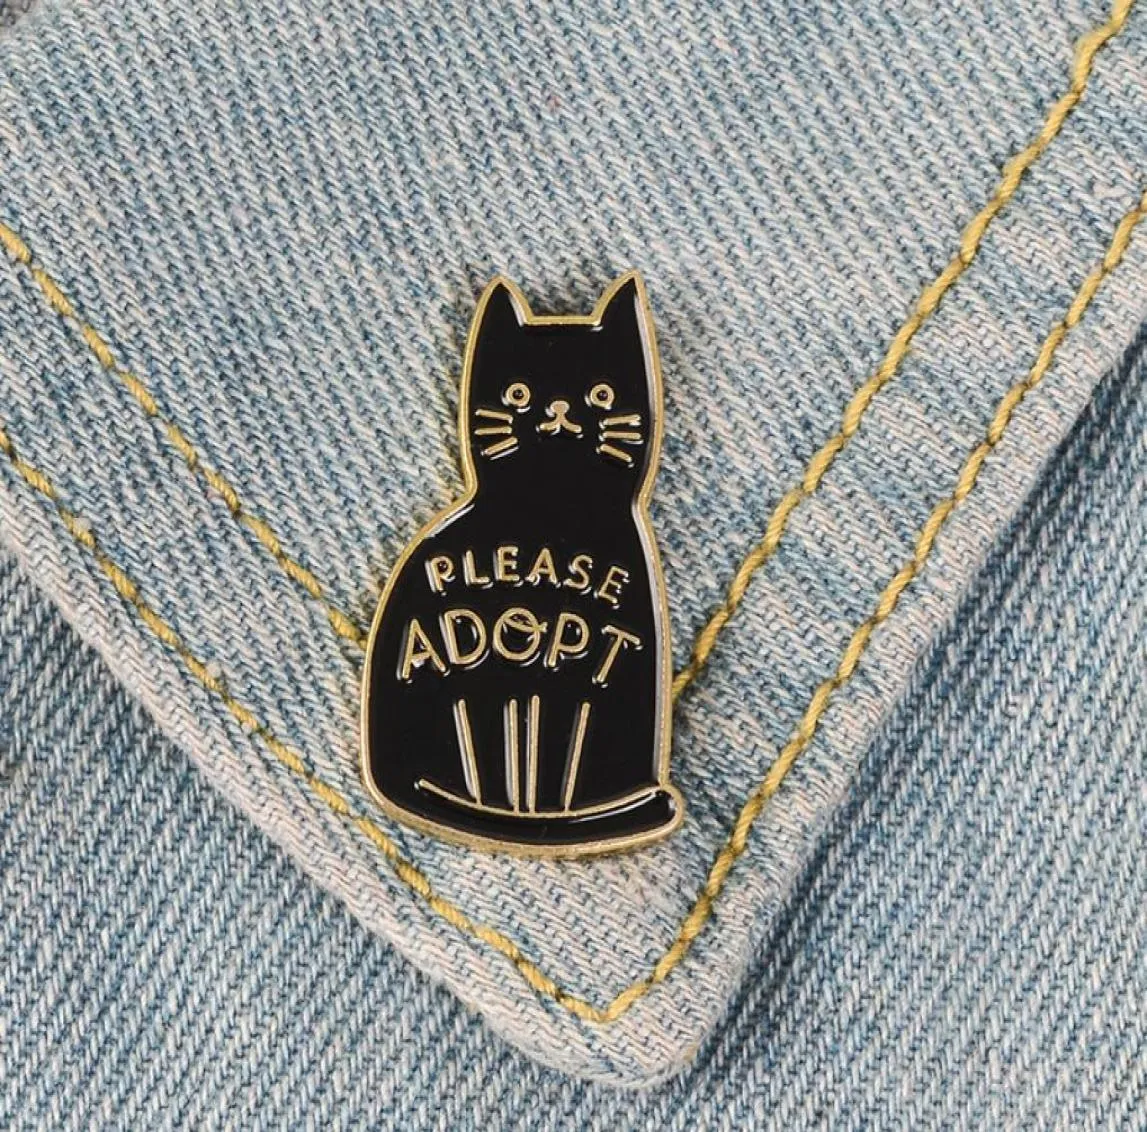 Broches de chat en émail noir épingles à boutons pour sac à vêtements veuillez adopter l'insigne de bijoux d'animaux de dessin animé cadeau pour amis C35770969